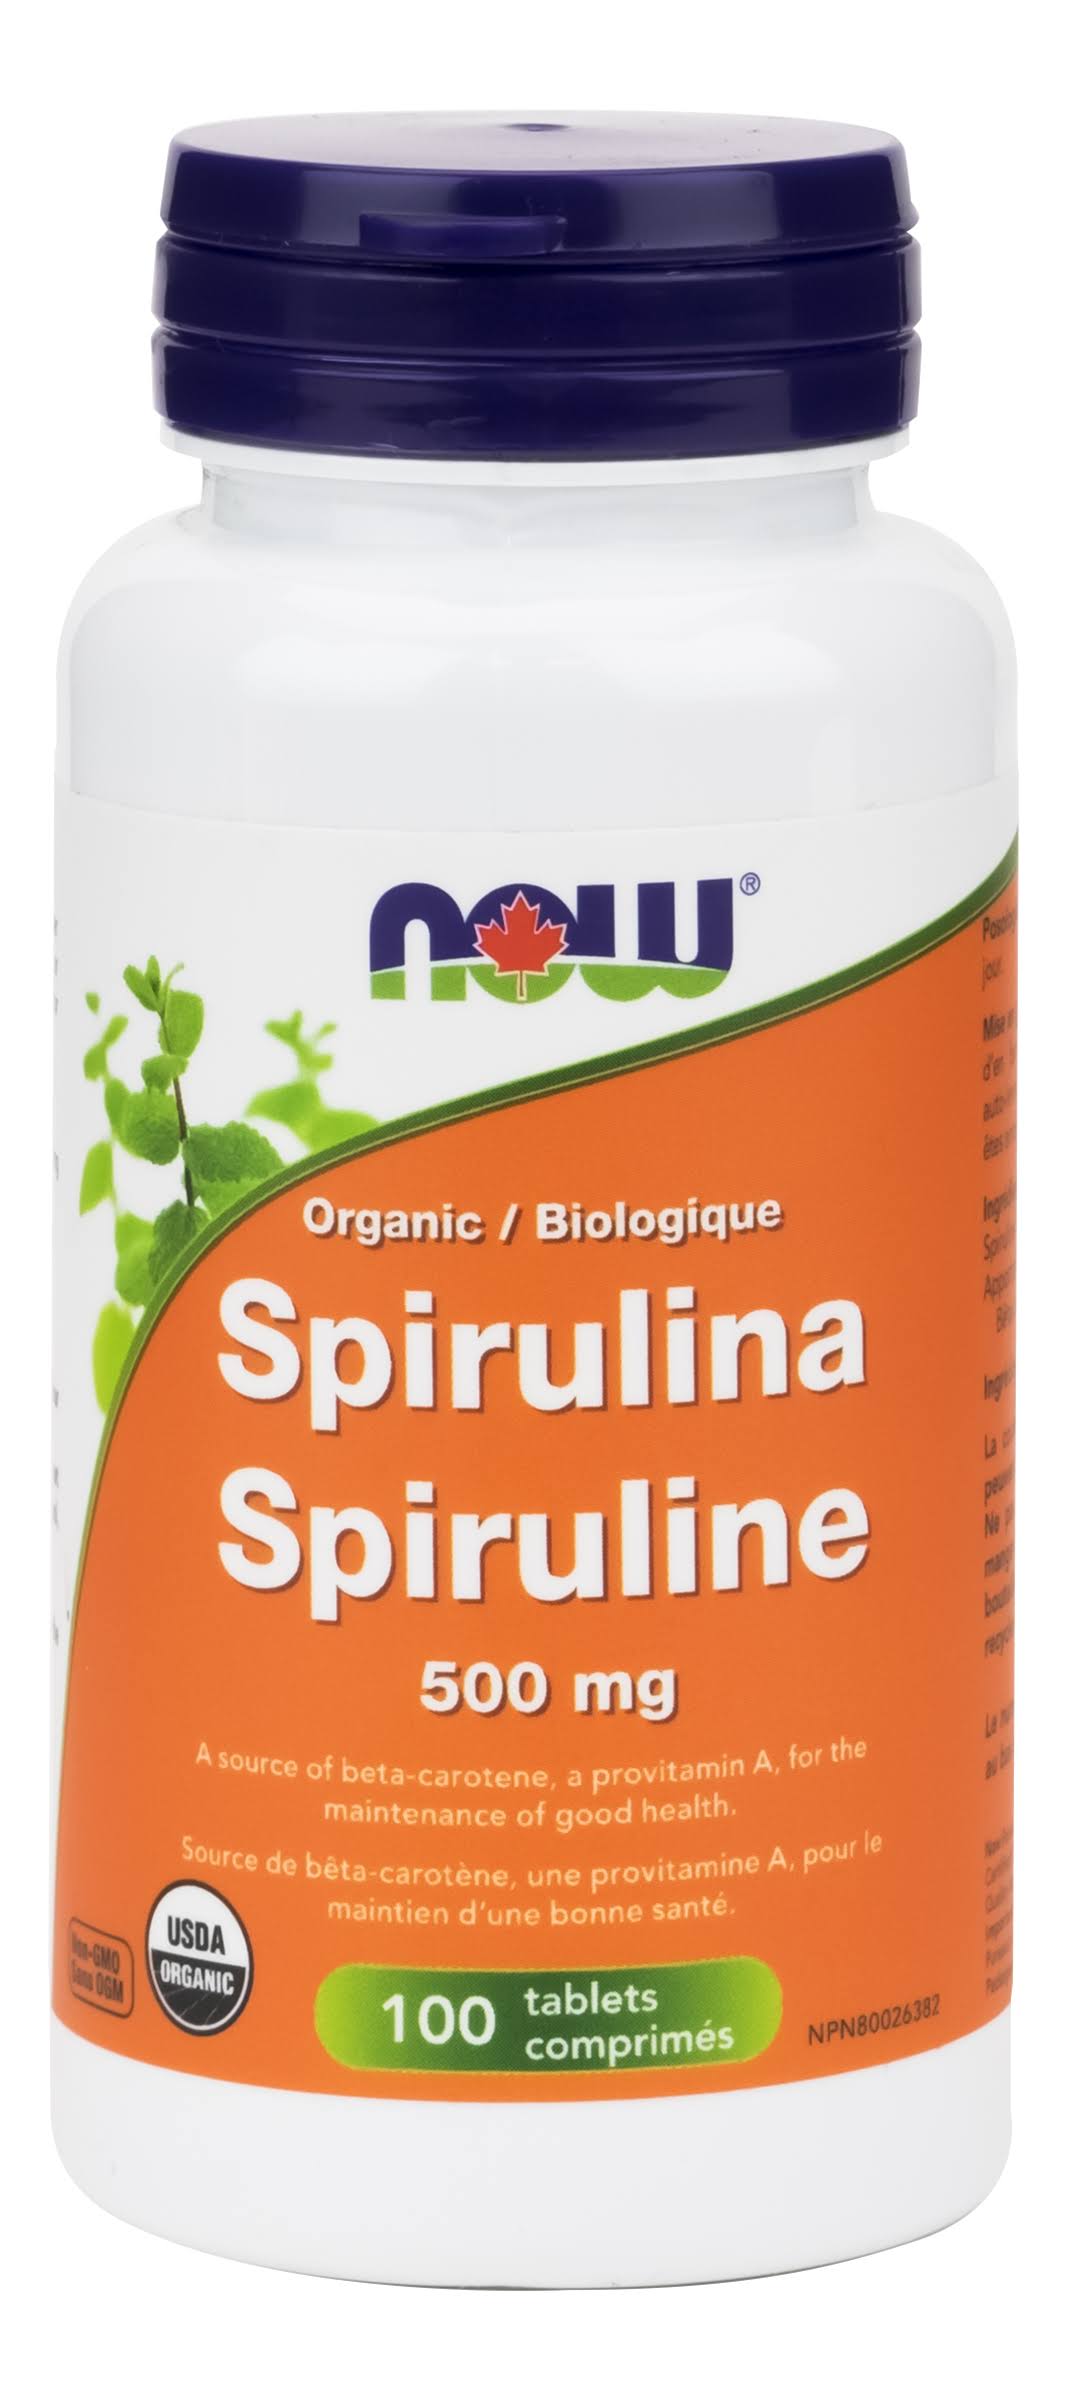 Spirulina - 500 mg - Grown in Hawaii - 100 tablets - ZIN: 405234